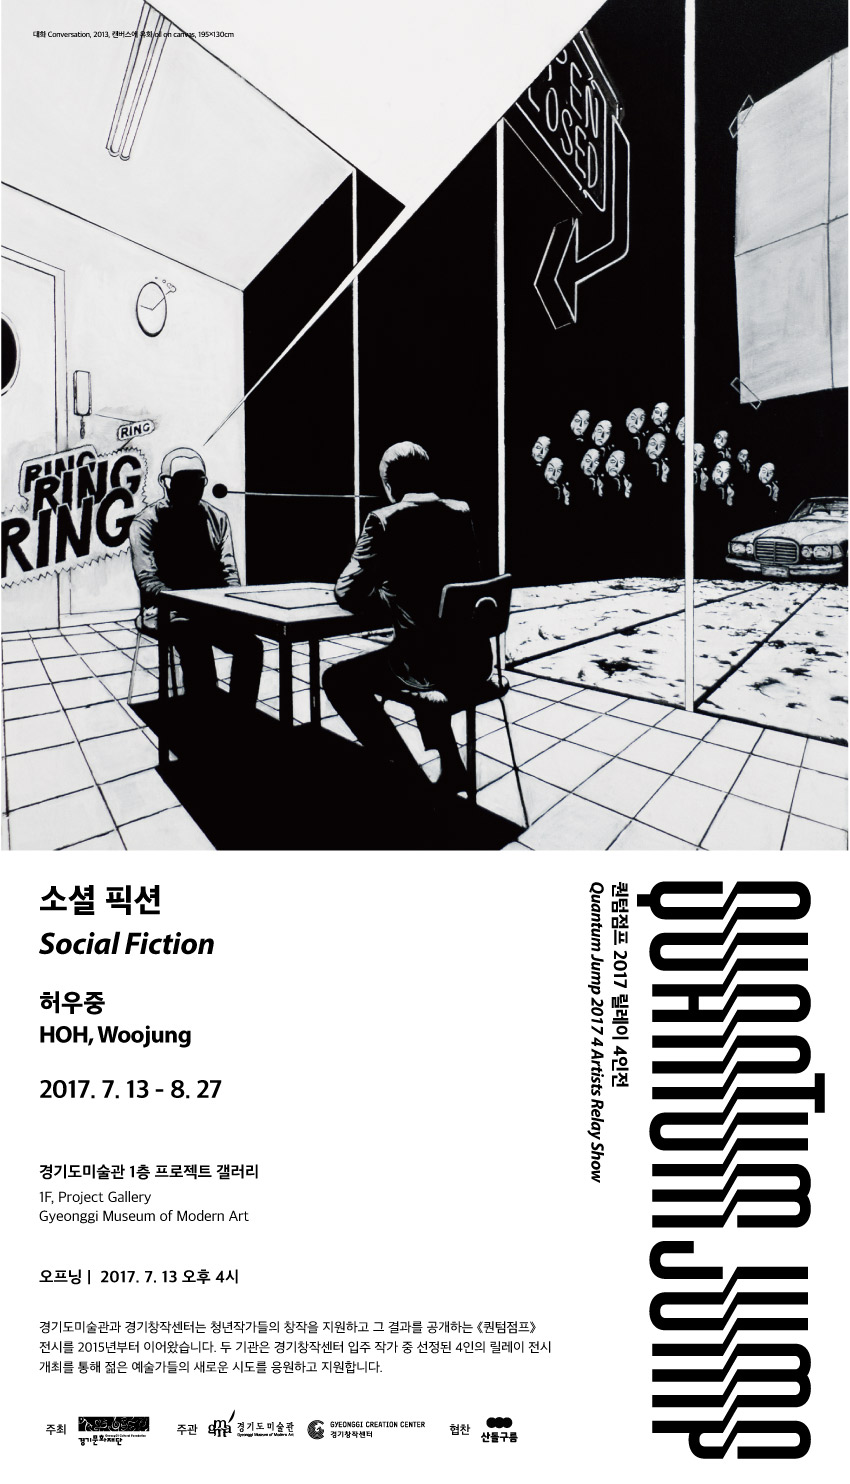 Hoh Woojung’s Social Fiction – Quantum Jump 2017, 4 Artists Relay Show